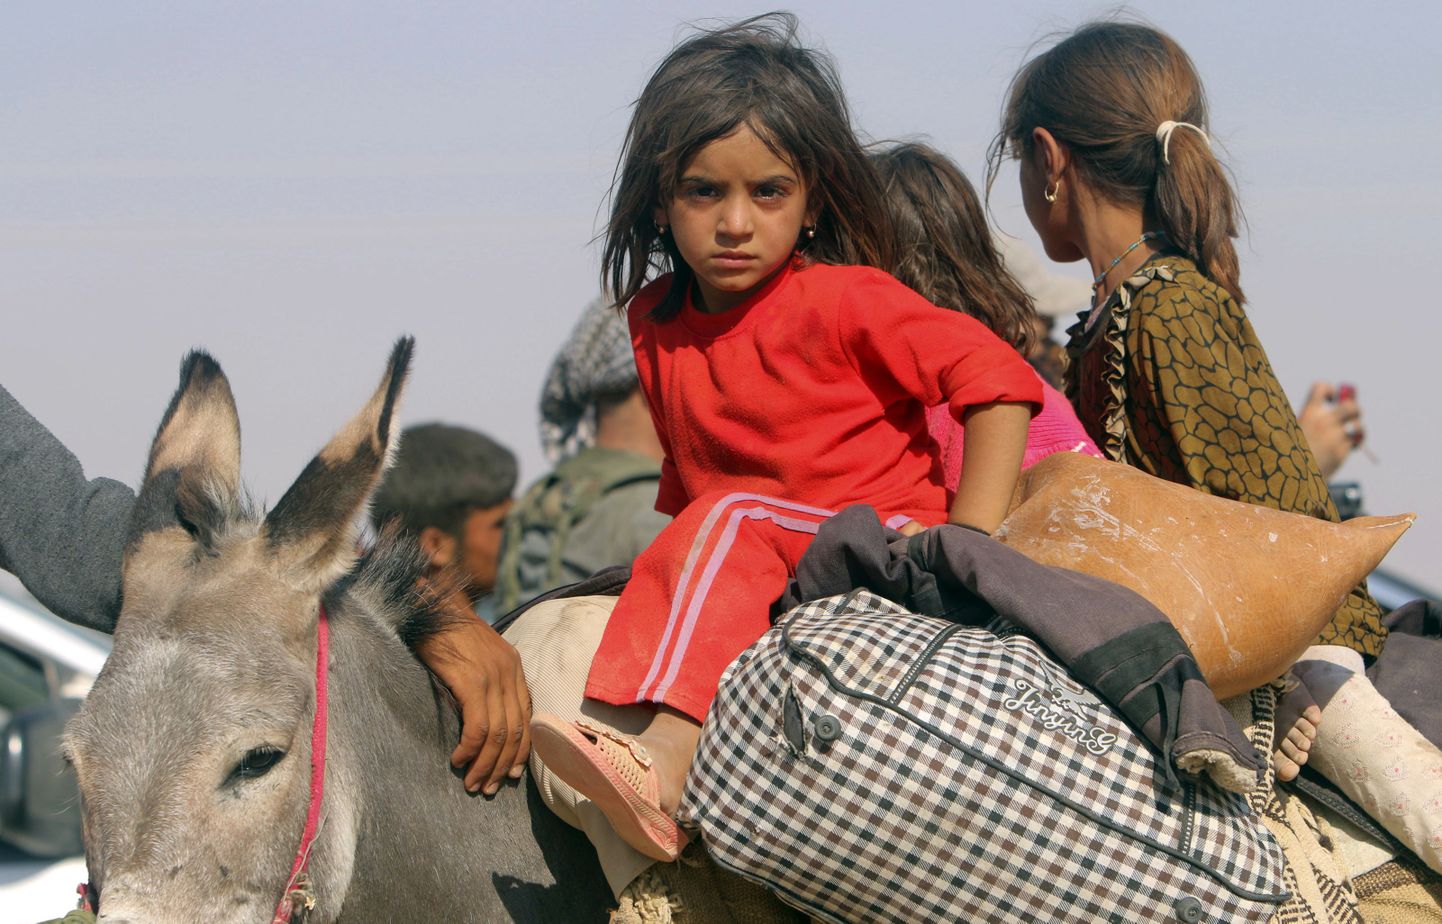 Pered põgenevad koos lastega Põhja-Iraagis tegutsevate pühasõdalaste eest.